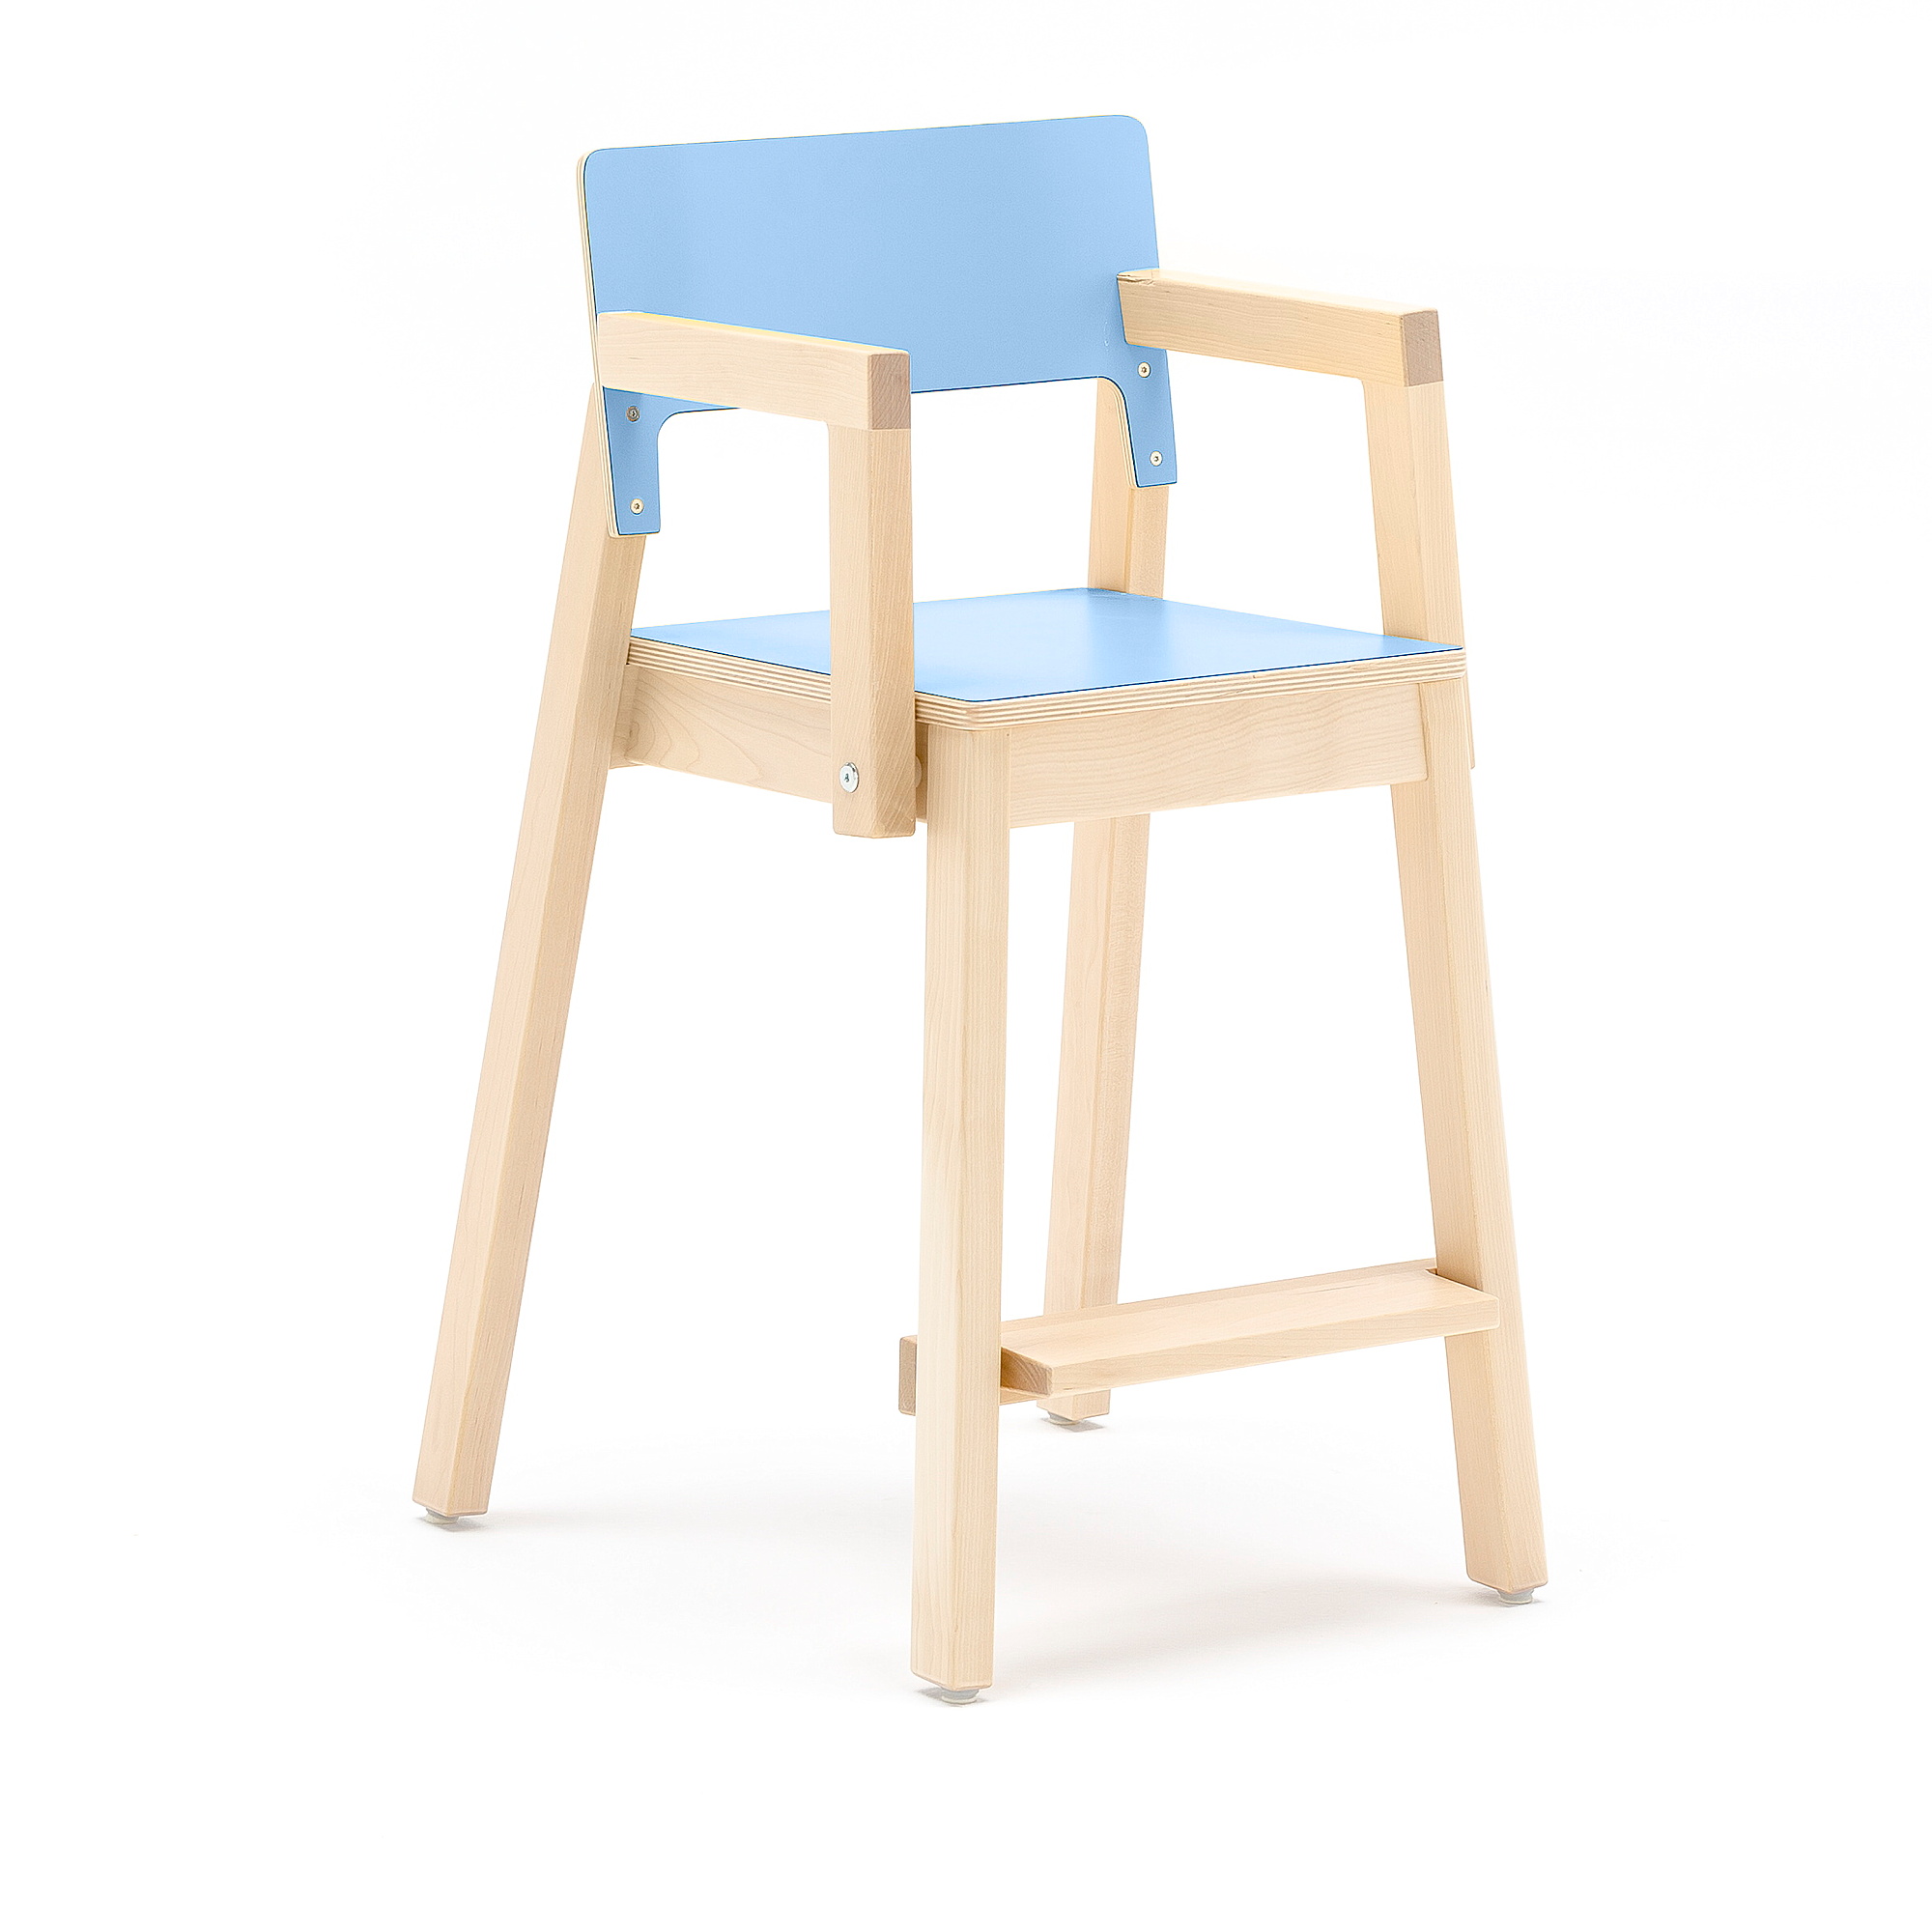 E-shop Vysoká detská stolička LOVE s opierkami rúk, V 500 mm, breza, laminát - modrá